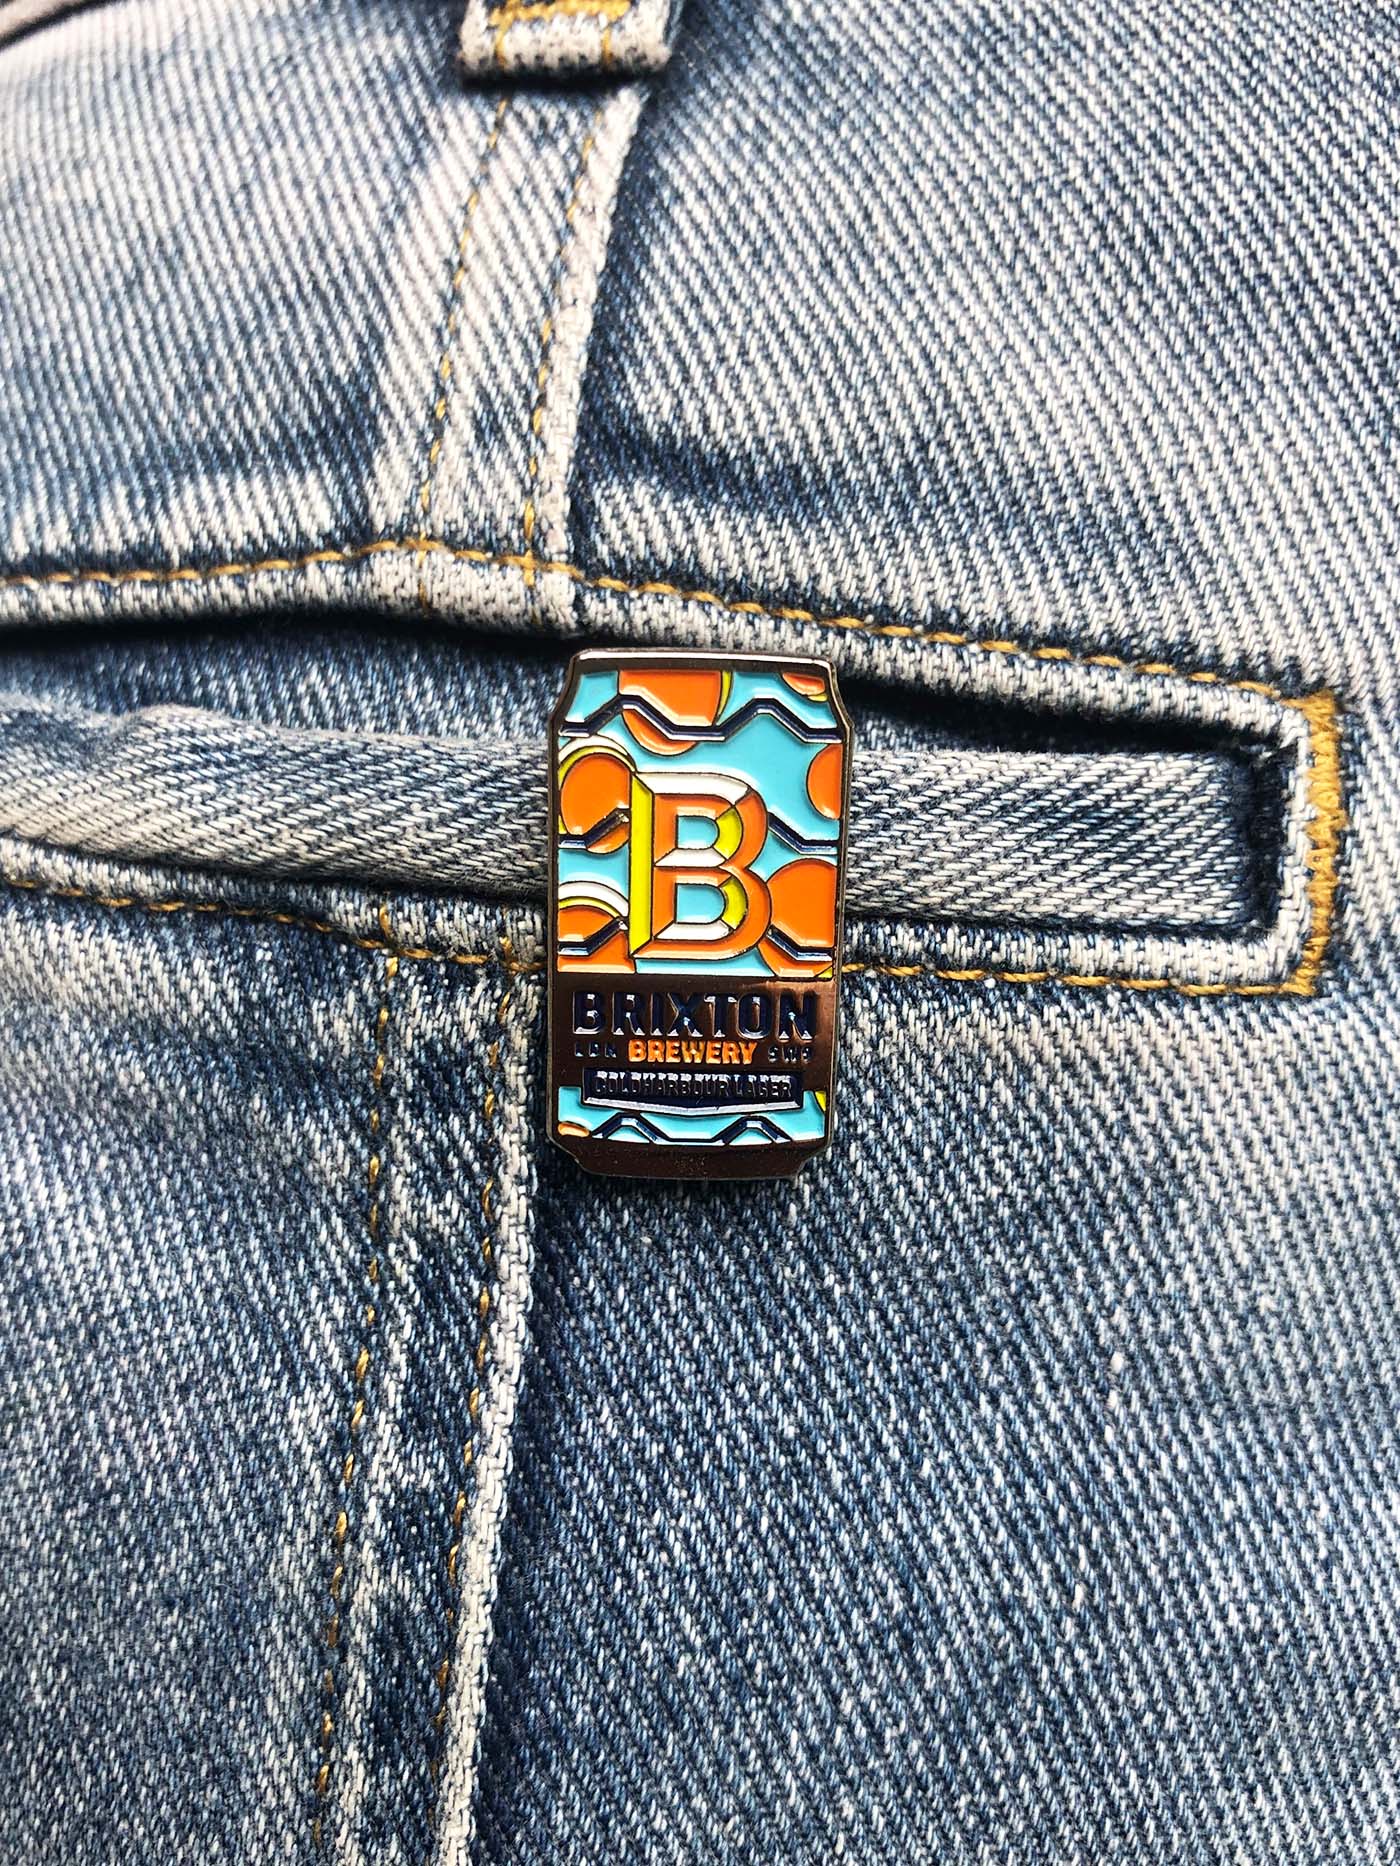 Brixton Brewery Mini Can Pin Badge